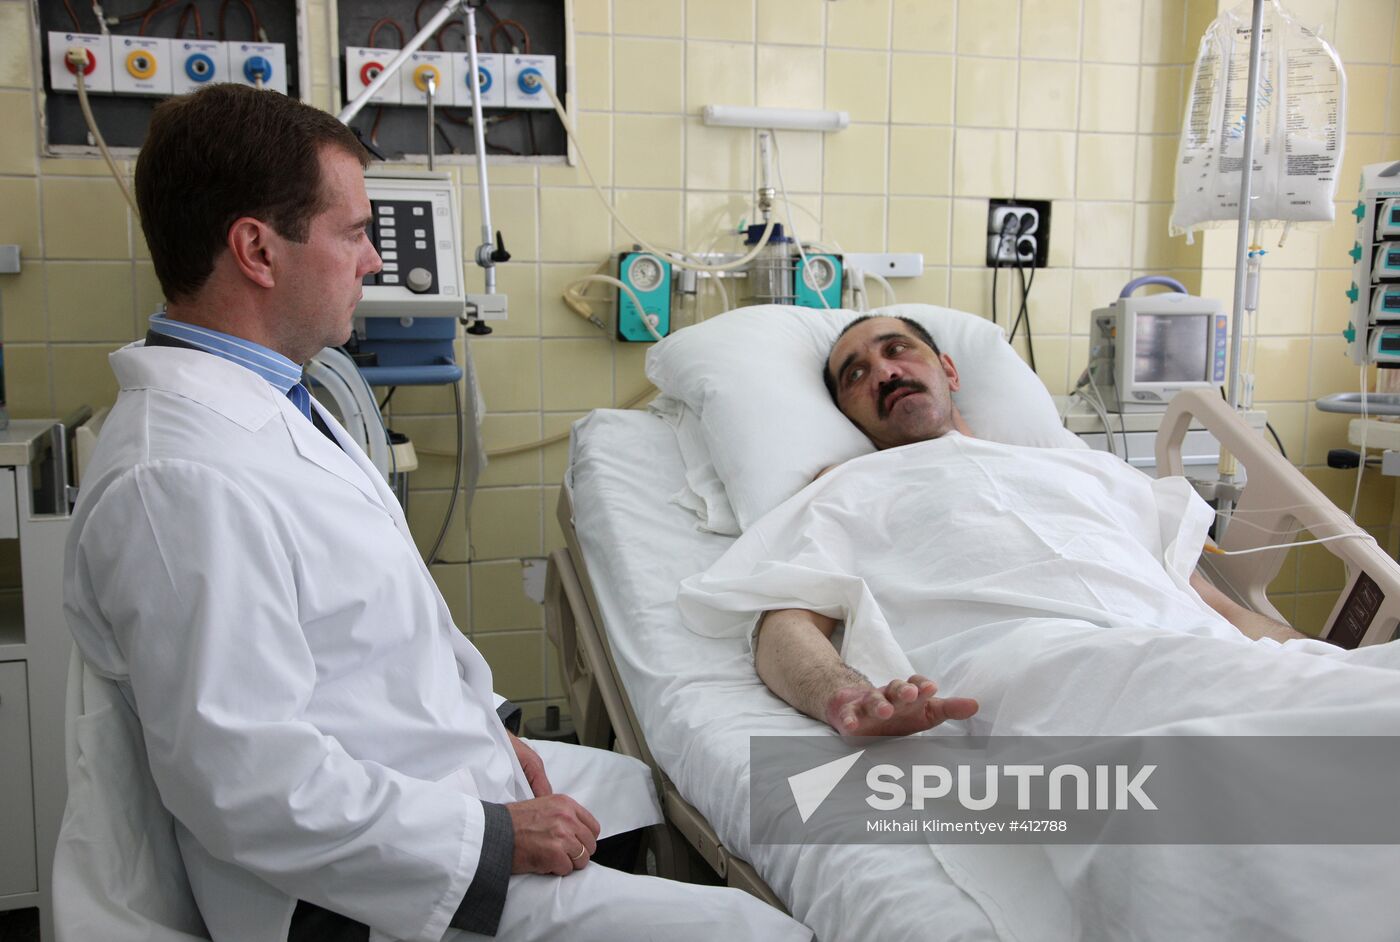 Dmitry Medvedev makes hospital visit to see Ingush President